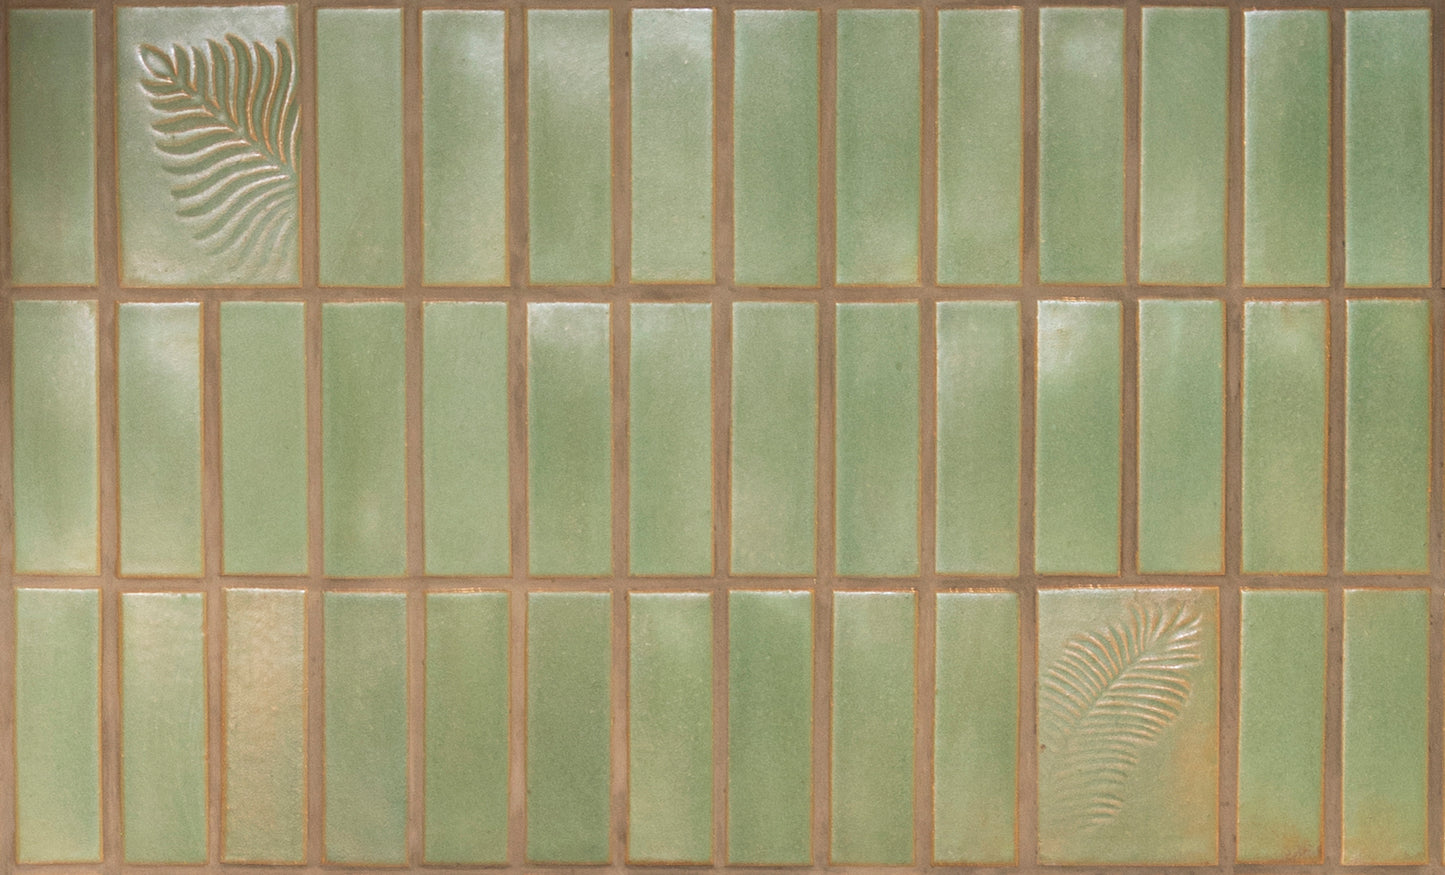 fern green subway tiles